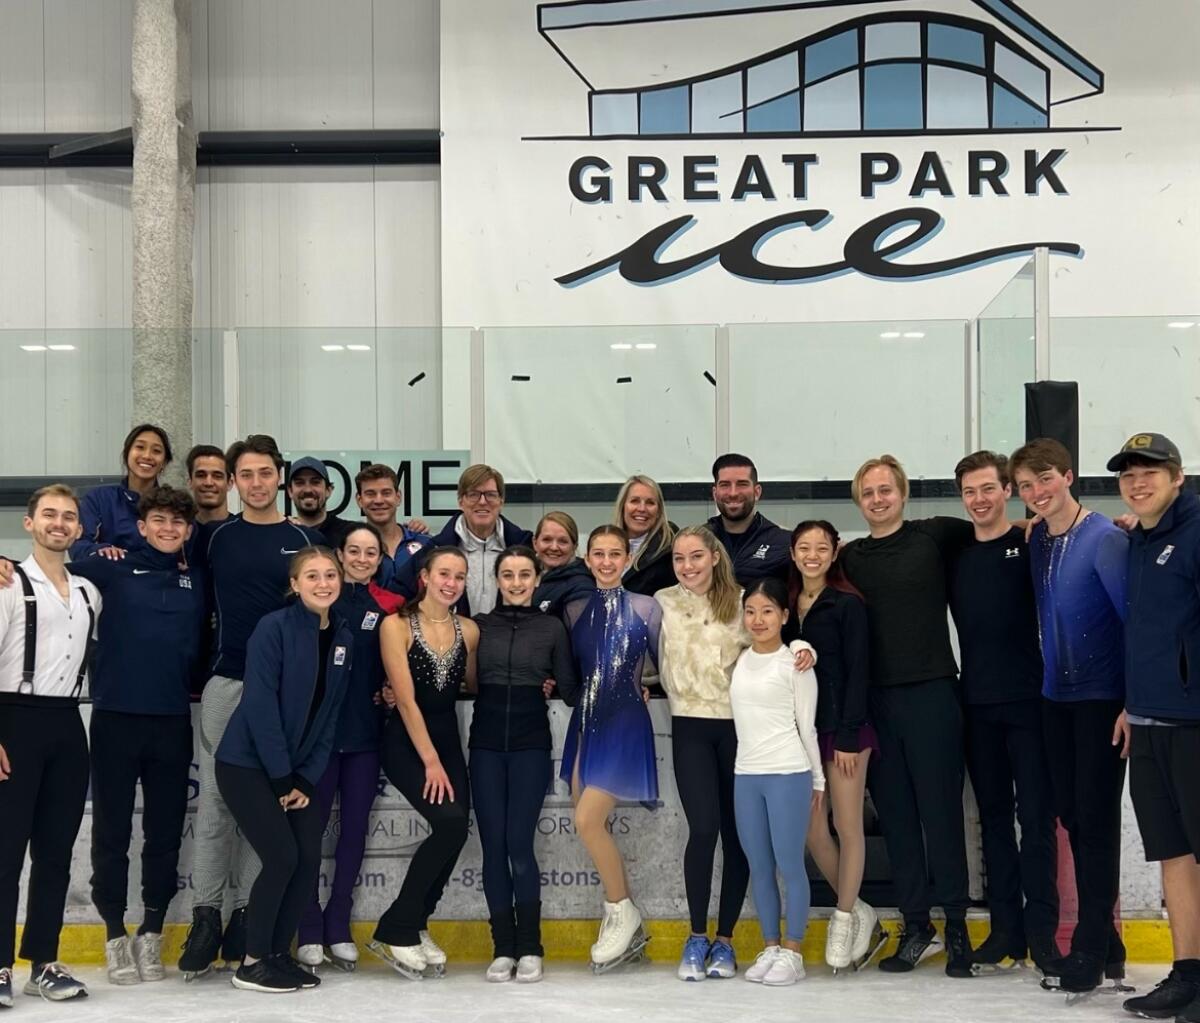 Todd Sand et Jenni Meno posent pour une photo avec de nombreux patineurs artistiques qui s'entraînent à Great Park Ice.